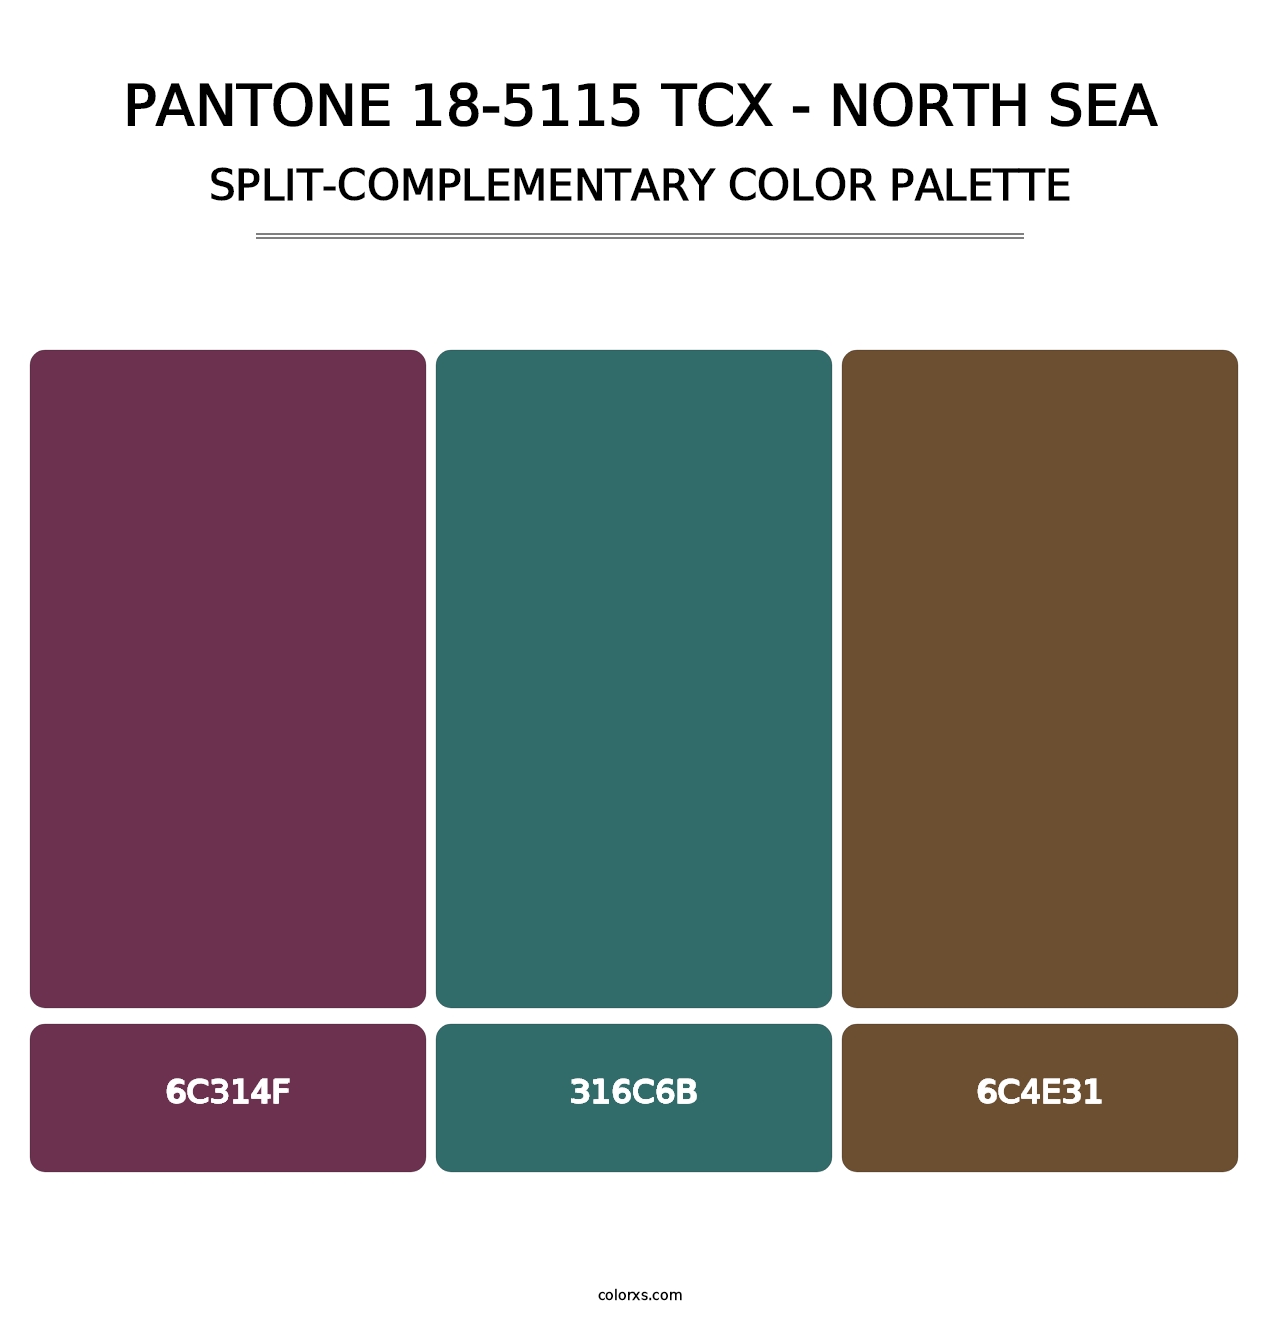 PANTONE 18-5115 TCX - North Sea - Split-Complementary Color Palette